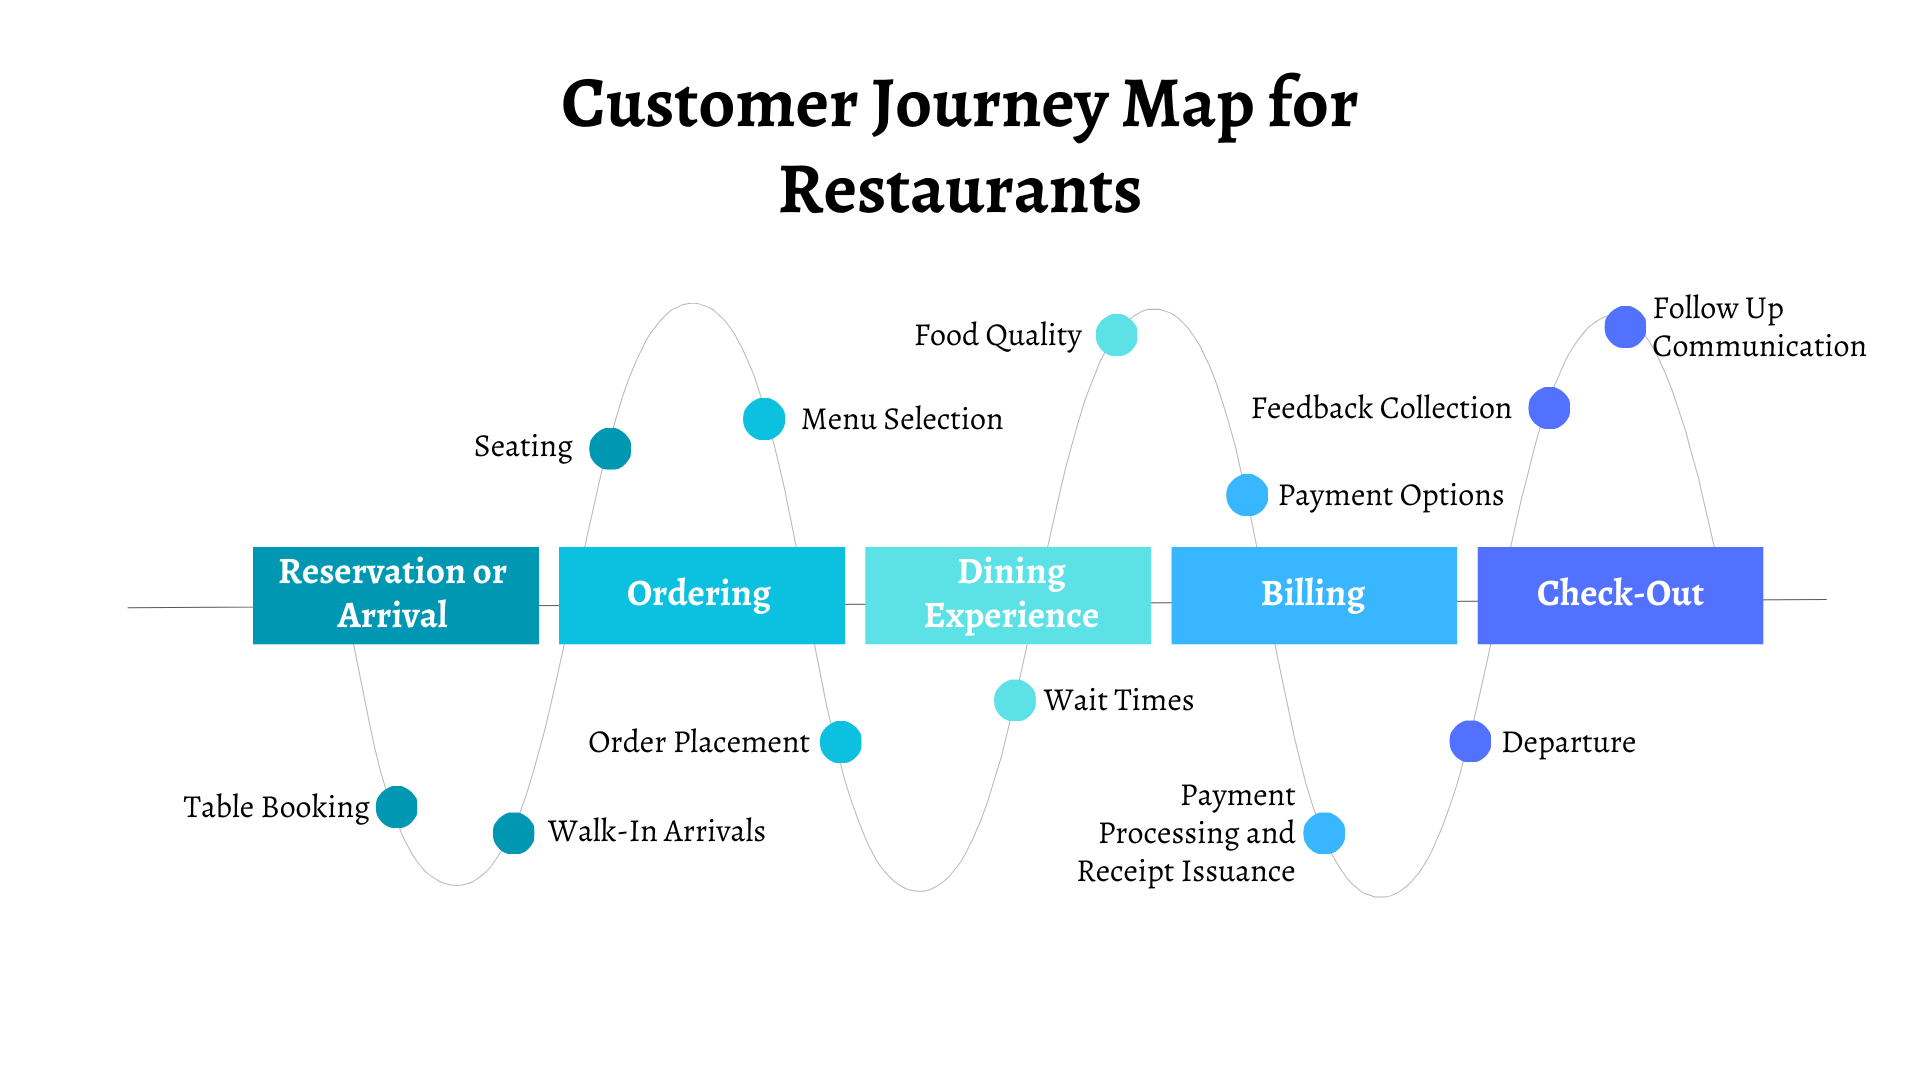 Customer Journey Map for Restaurants